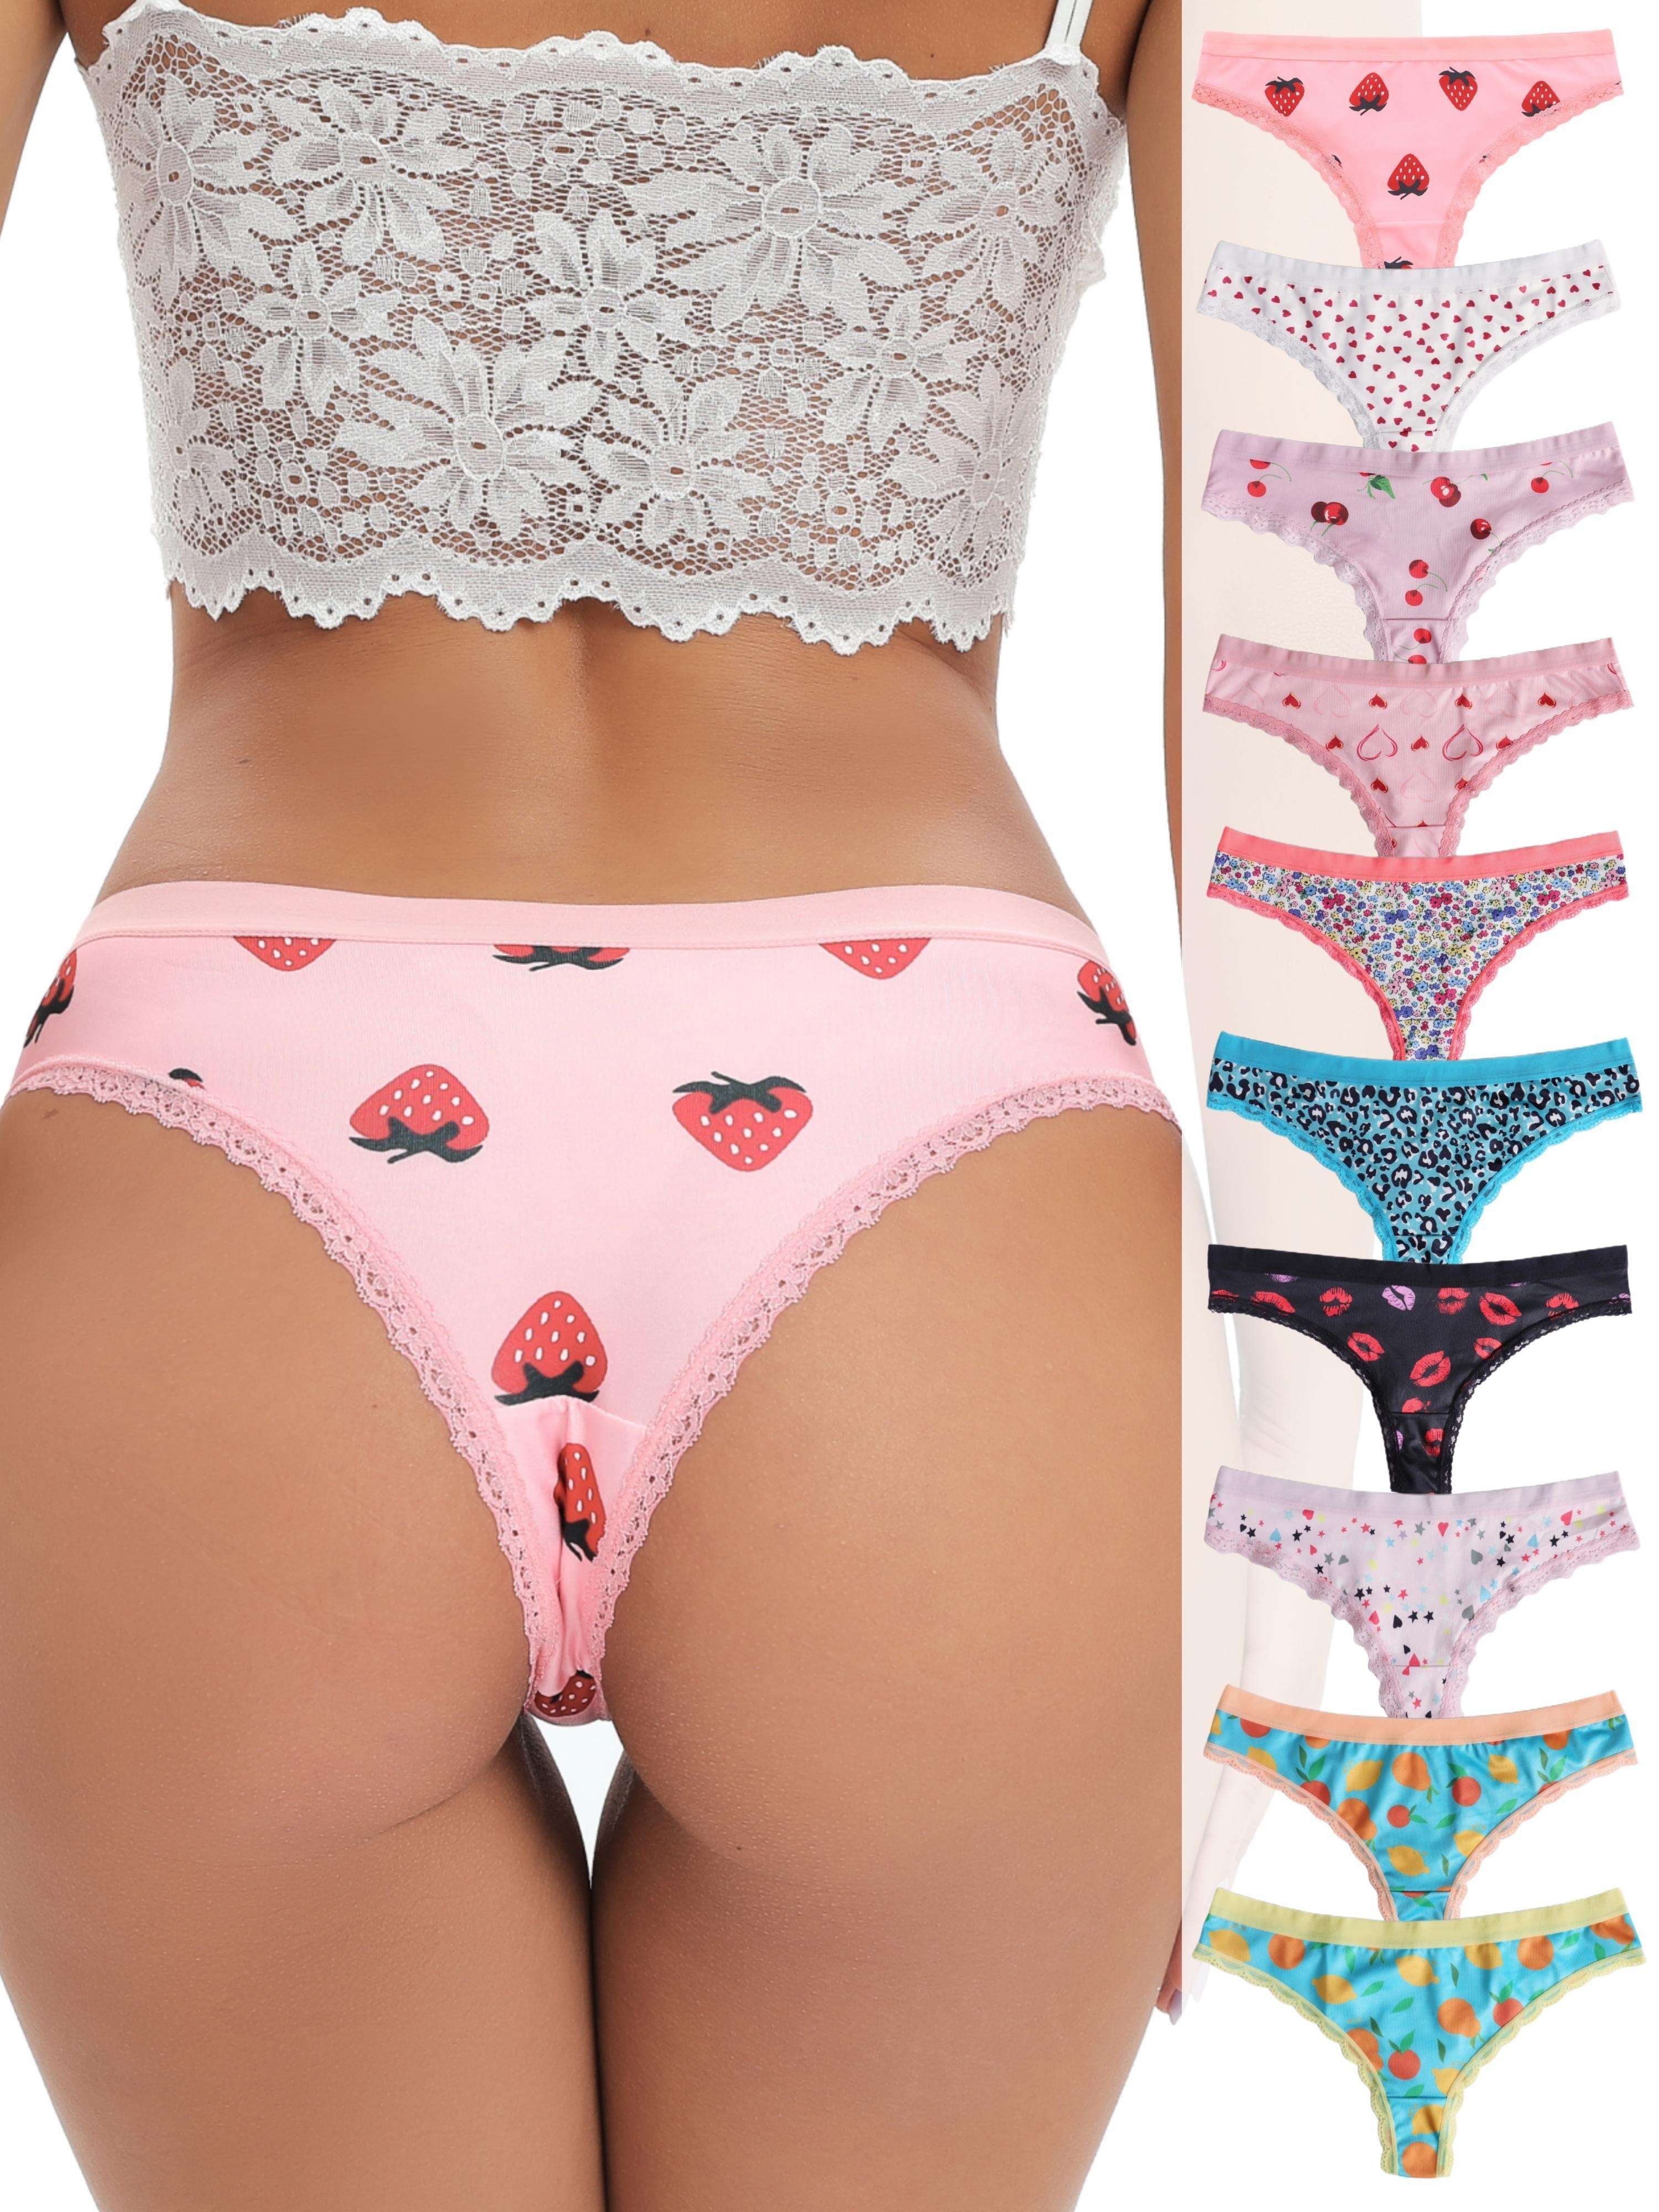 10 Pcs Fruit & Heart Print Thongs, Soft & Comfy Lace Trim Panties, Women's  Lingerie & Underwear